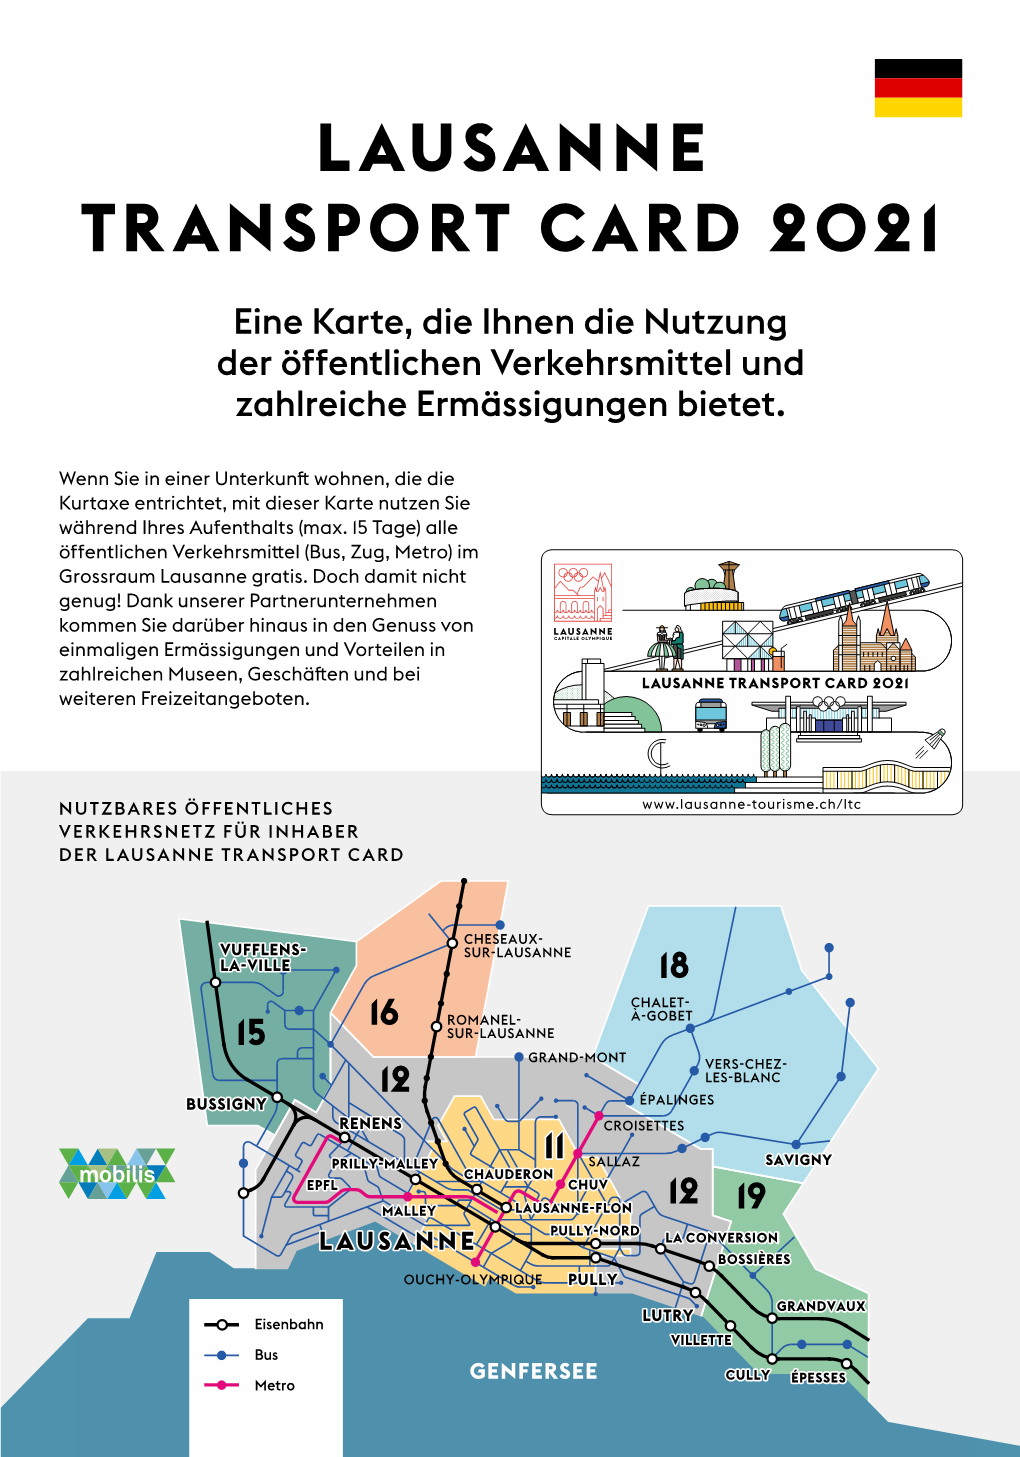 LAUSANNE TRANSPORT CARD 2021 Eine Karte, Die Ihnen Die Nutzung Der Öffentlichen Verkehrsmittel Und Zahlreiche Ermässigungen Bietet